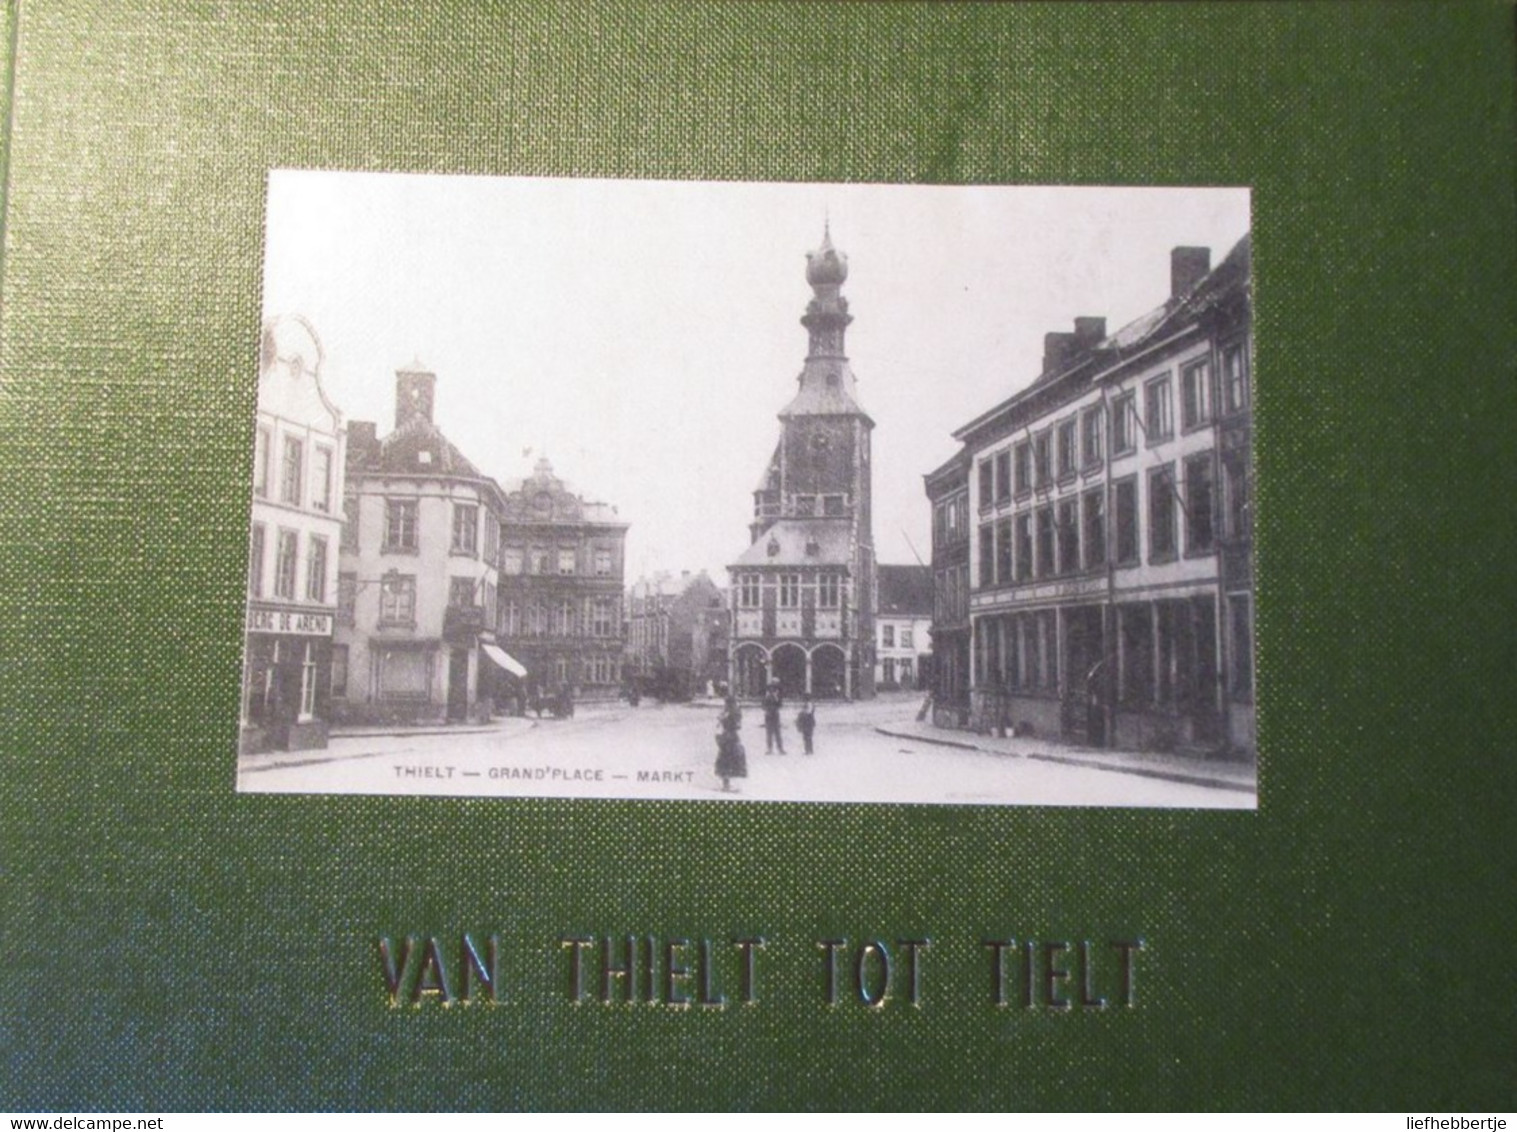 Van Thielt Tot Tielt - Postkaarten - 1975 - Geschichte